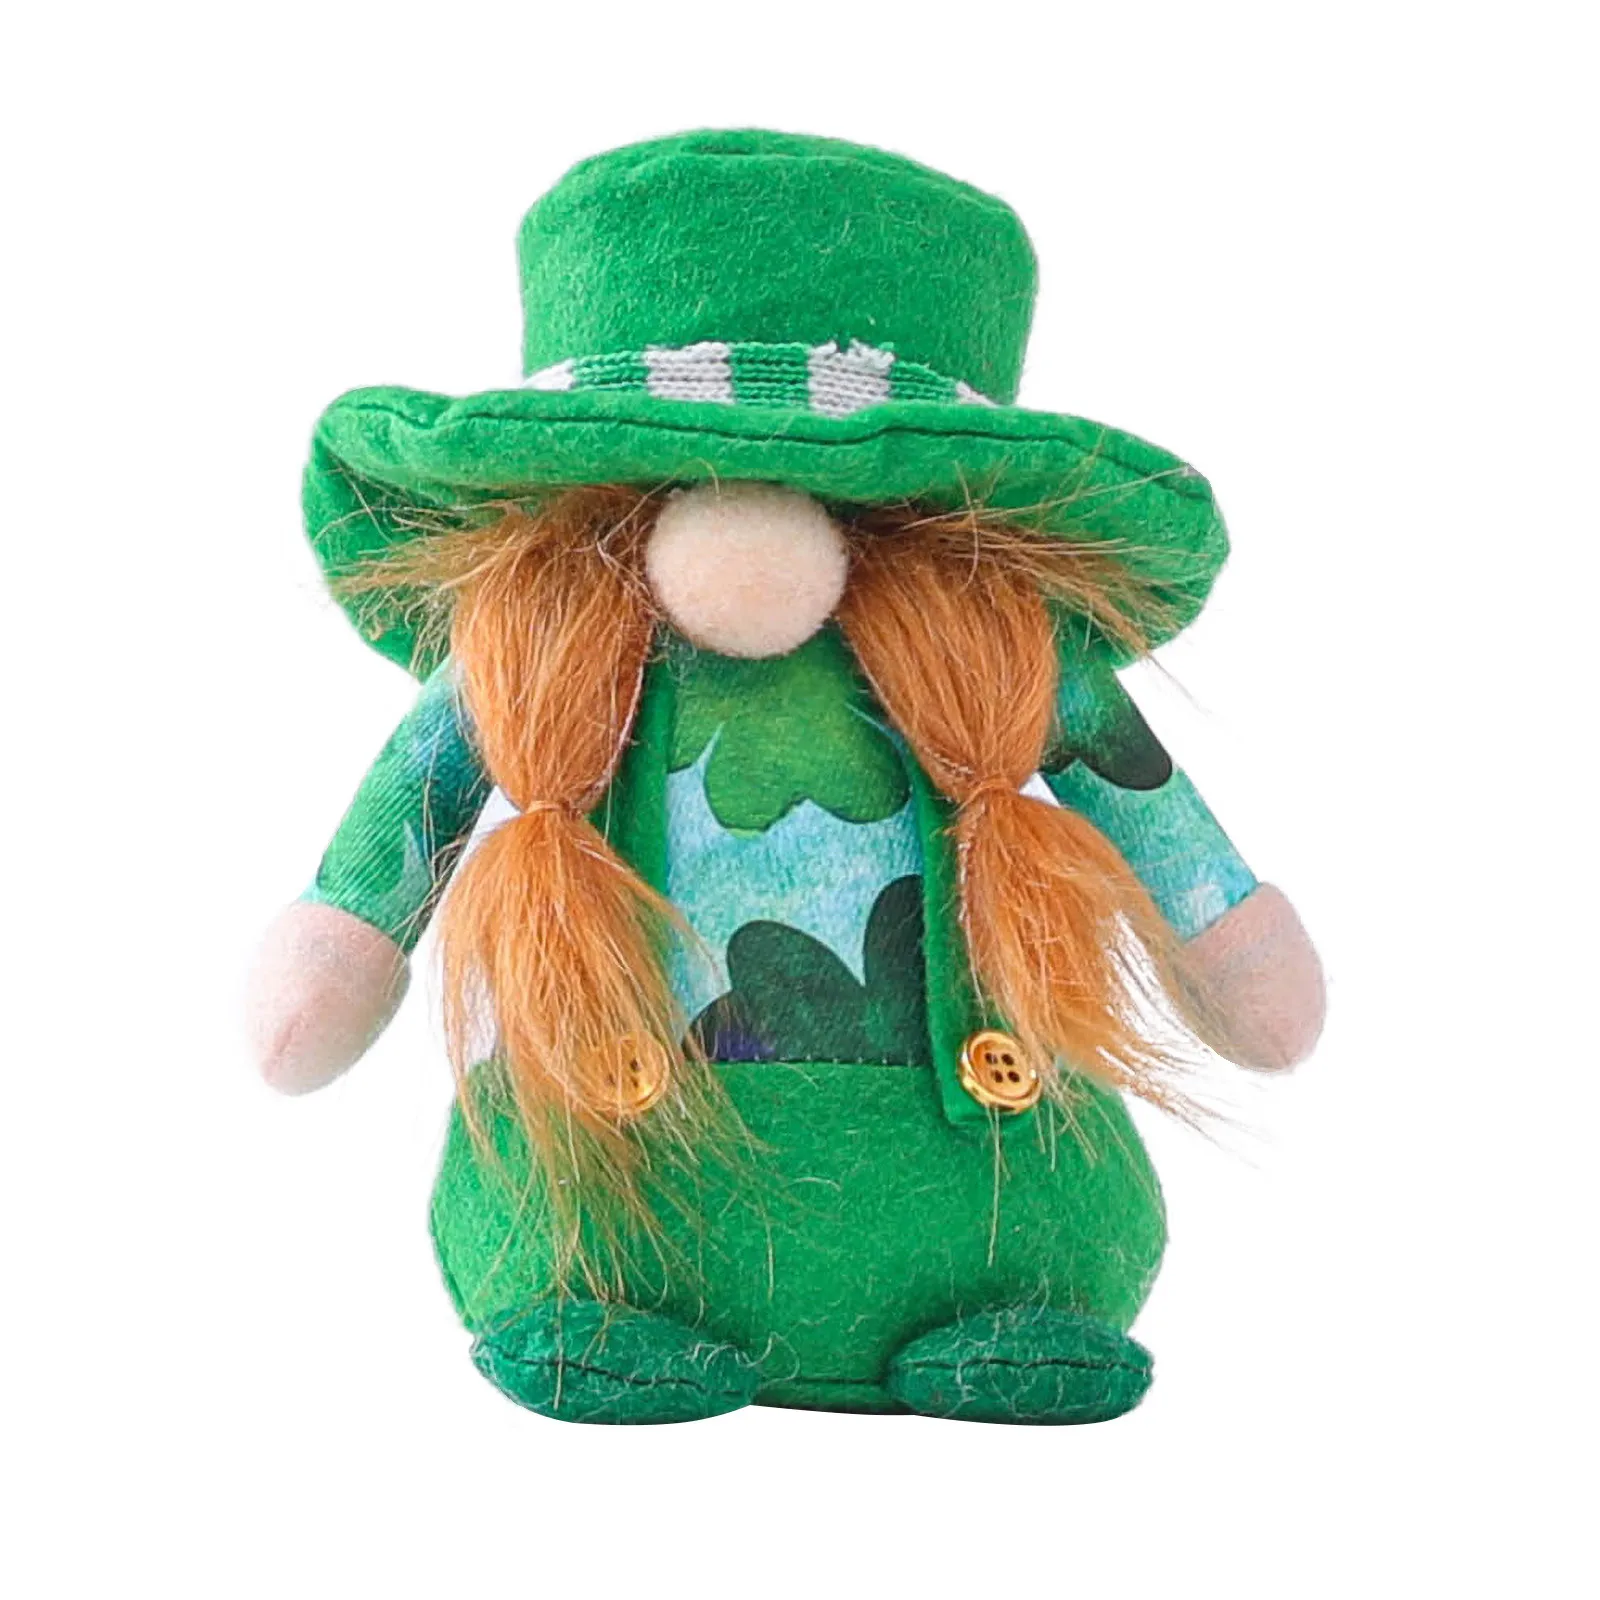 Кукла на день Ирландия День Святого Патрика безликая кукла Рудольфа Декор